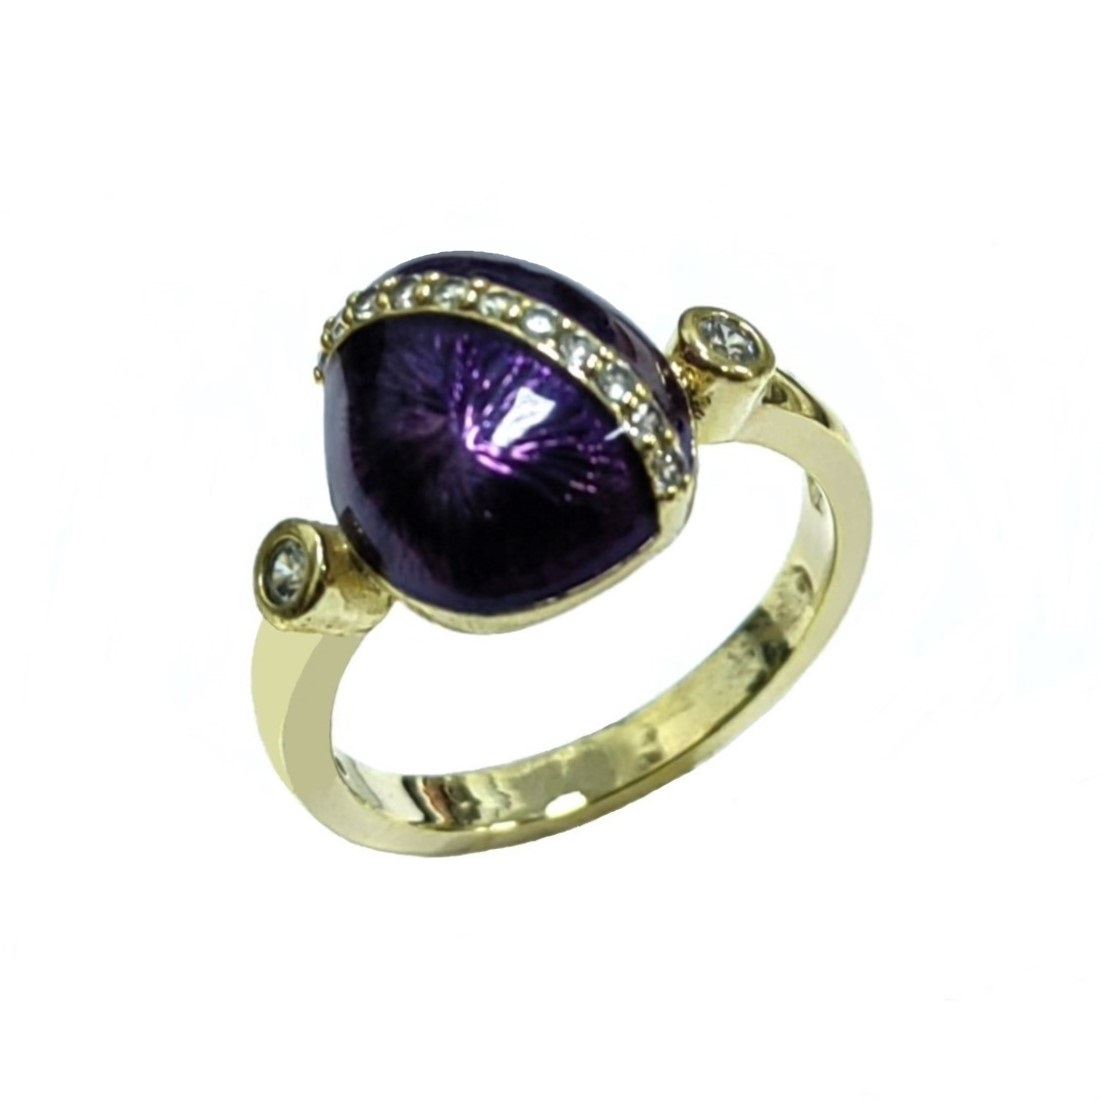 Moda diyariya Paskalyayê bi şêwaza rûsî Fancy Custom Kesk Enamel Faberge Egg Ring